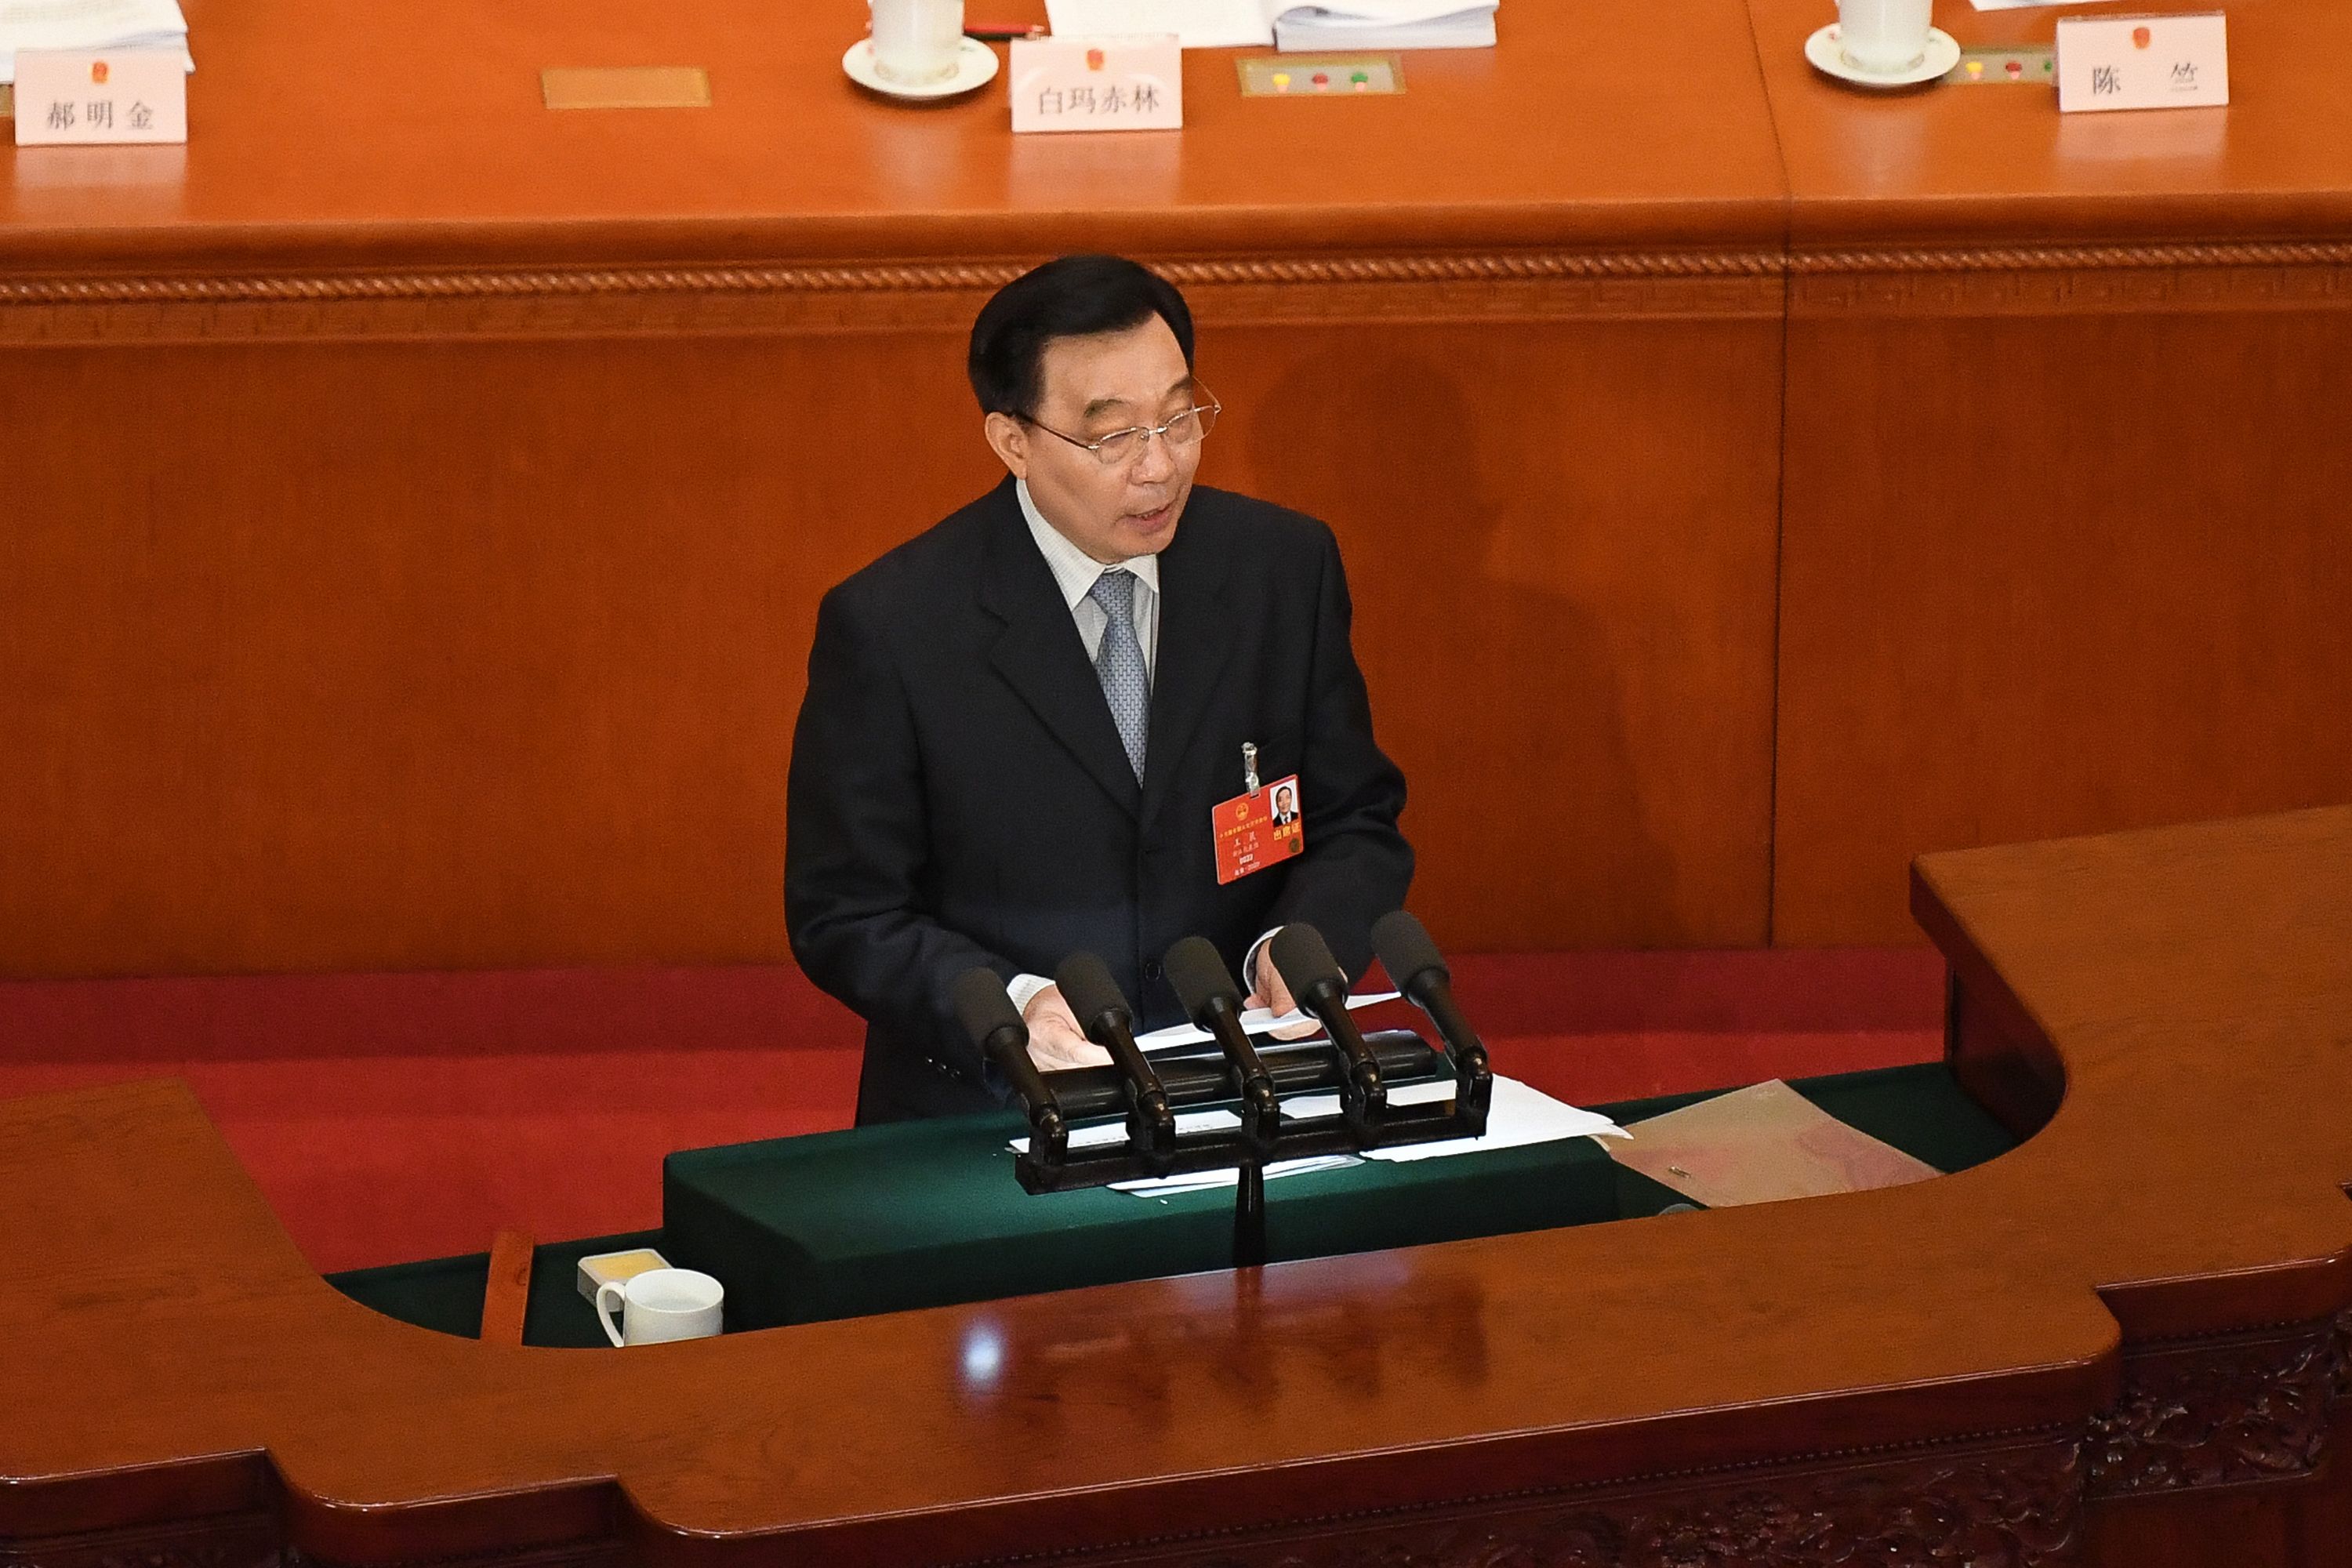 홍콩보안법 초안 설명하는 왕천 전인대 부위원장